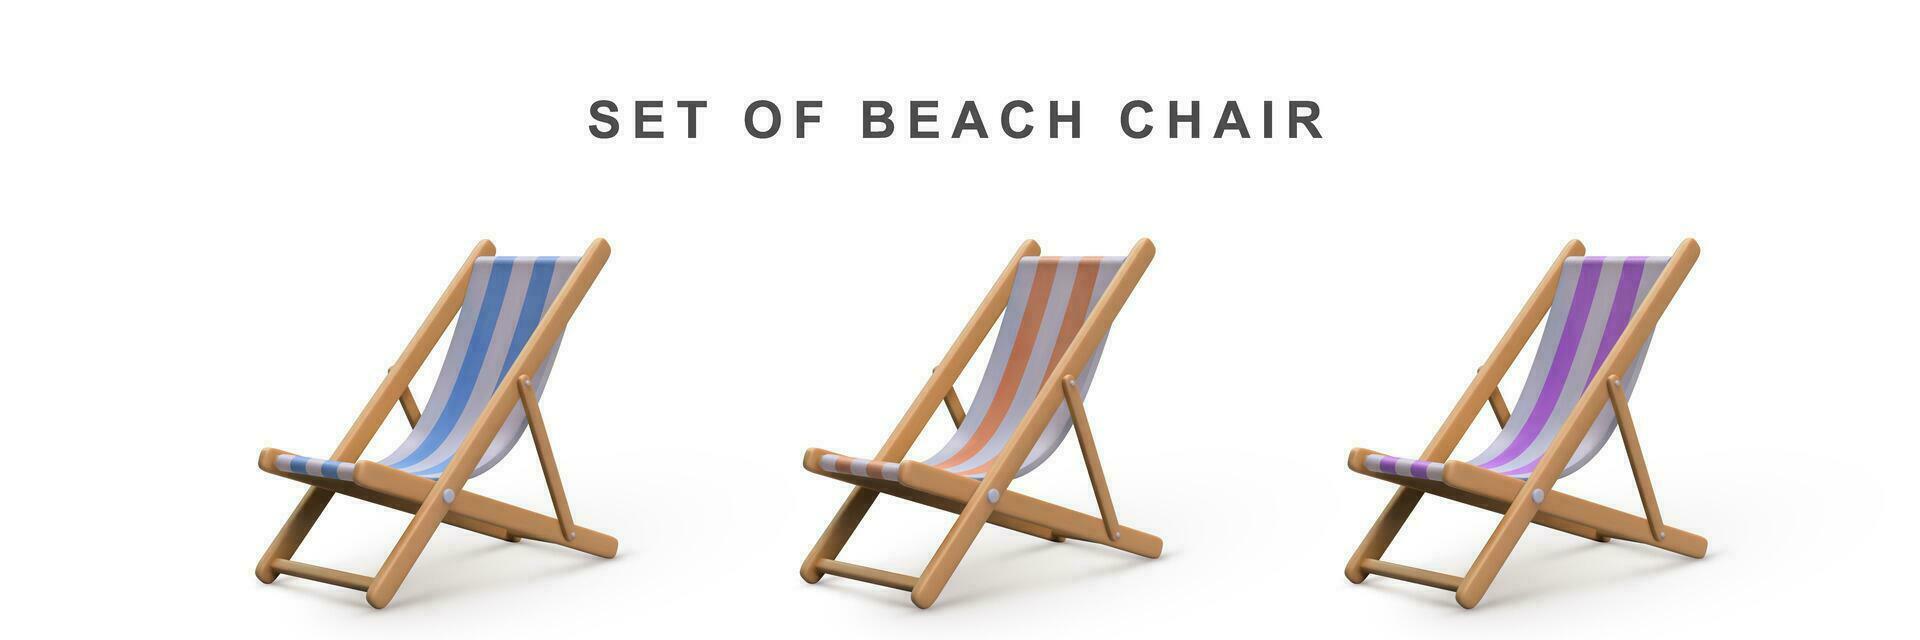 3d réaliste ensemble plage chaise. vecteur illustration.